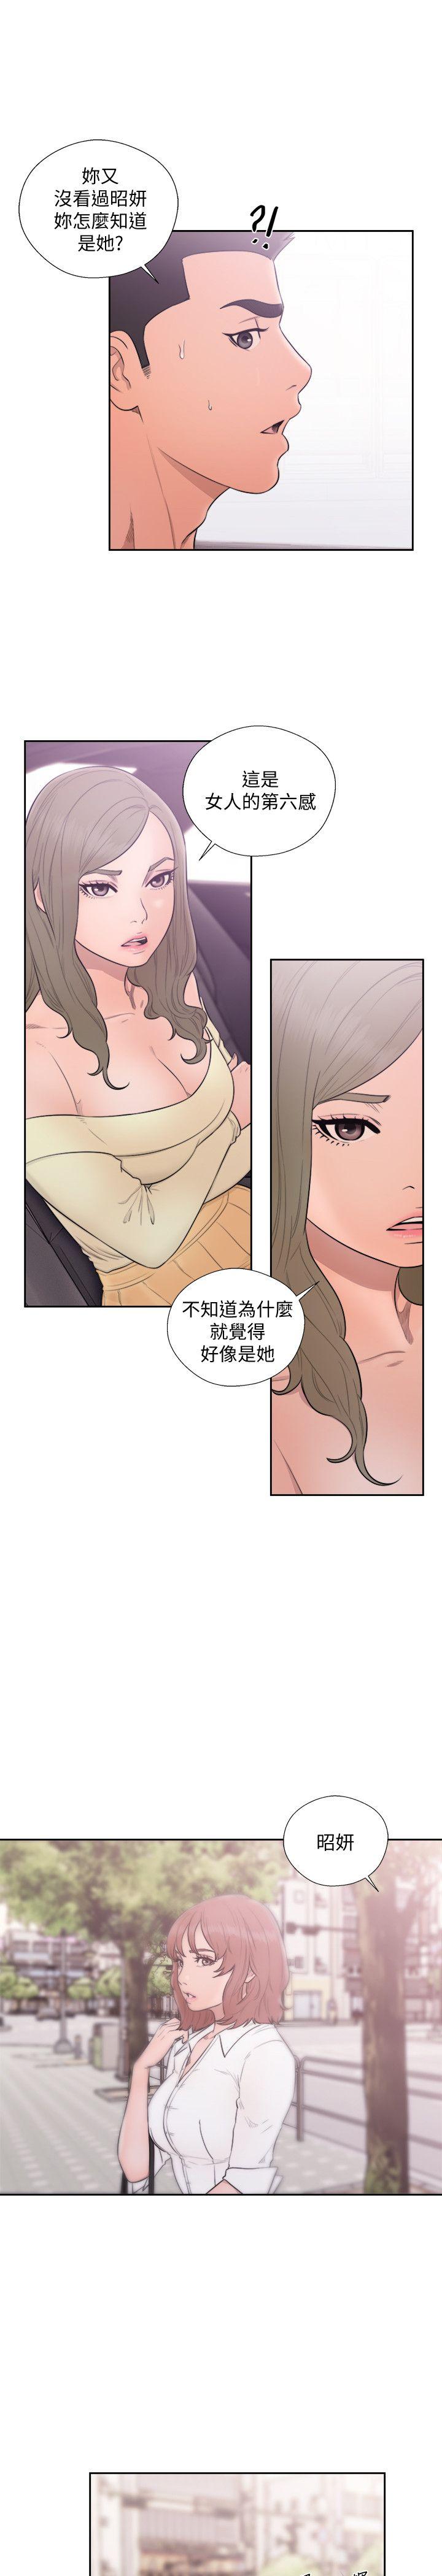 韩国污漫画 解禁:初始的快感 第68话-车里有怪味 24